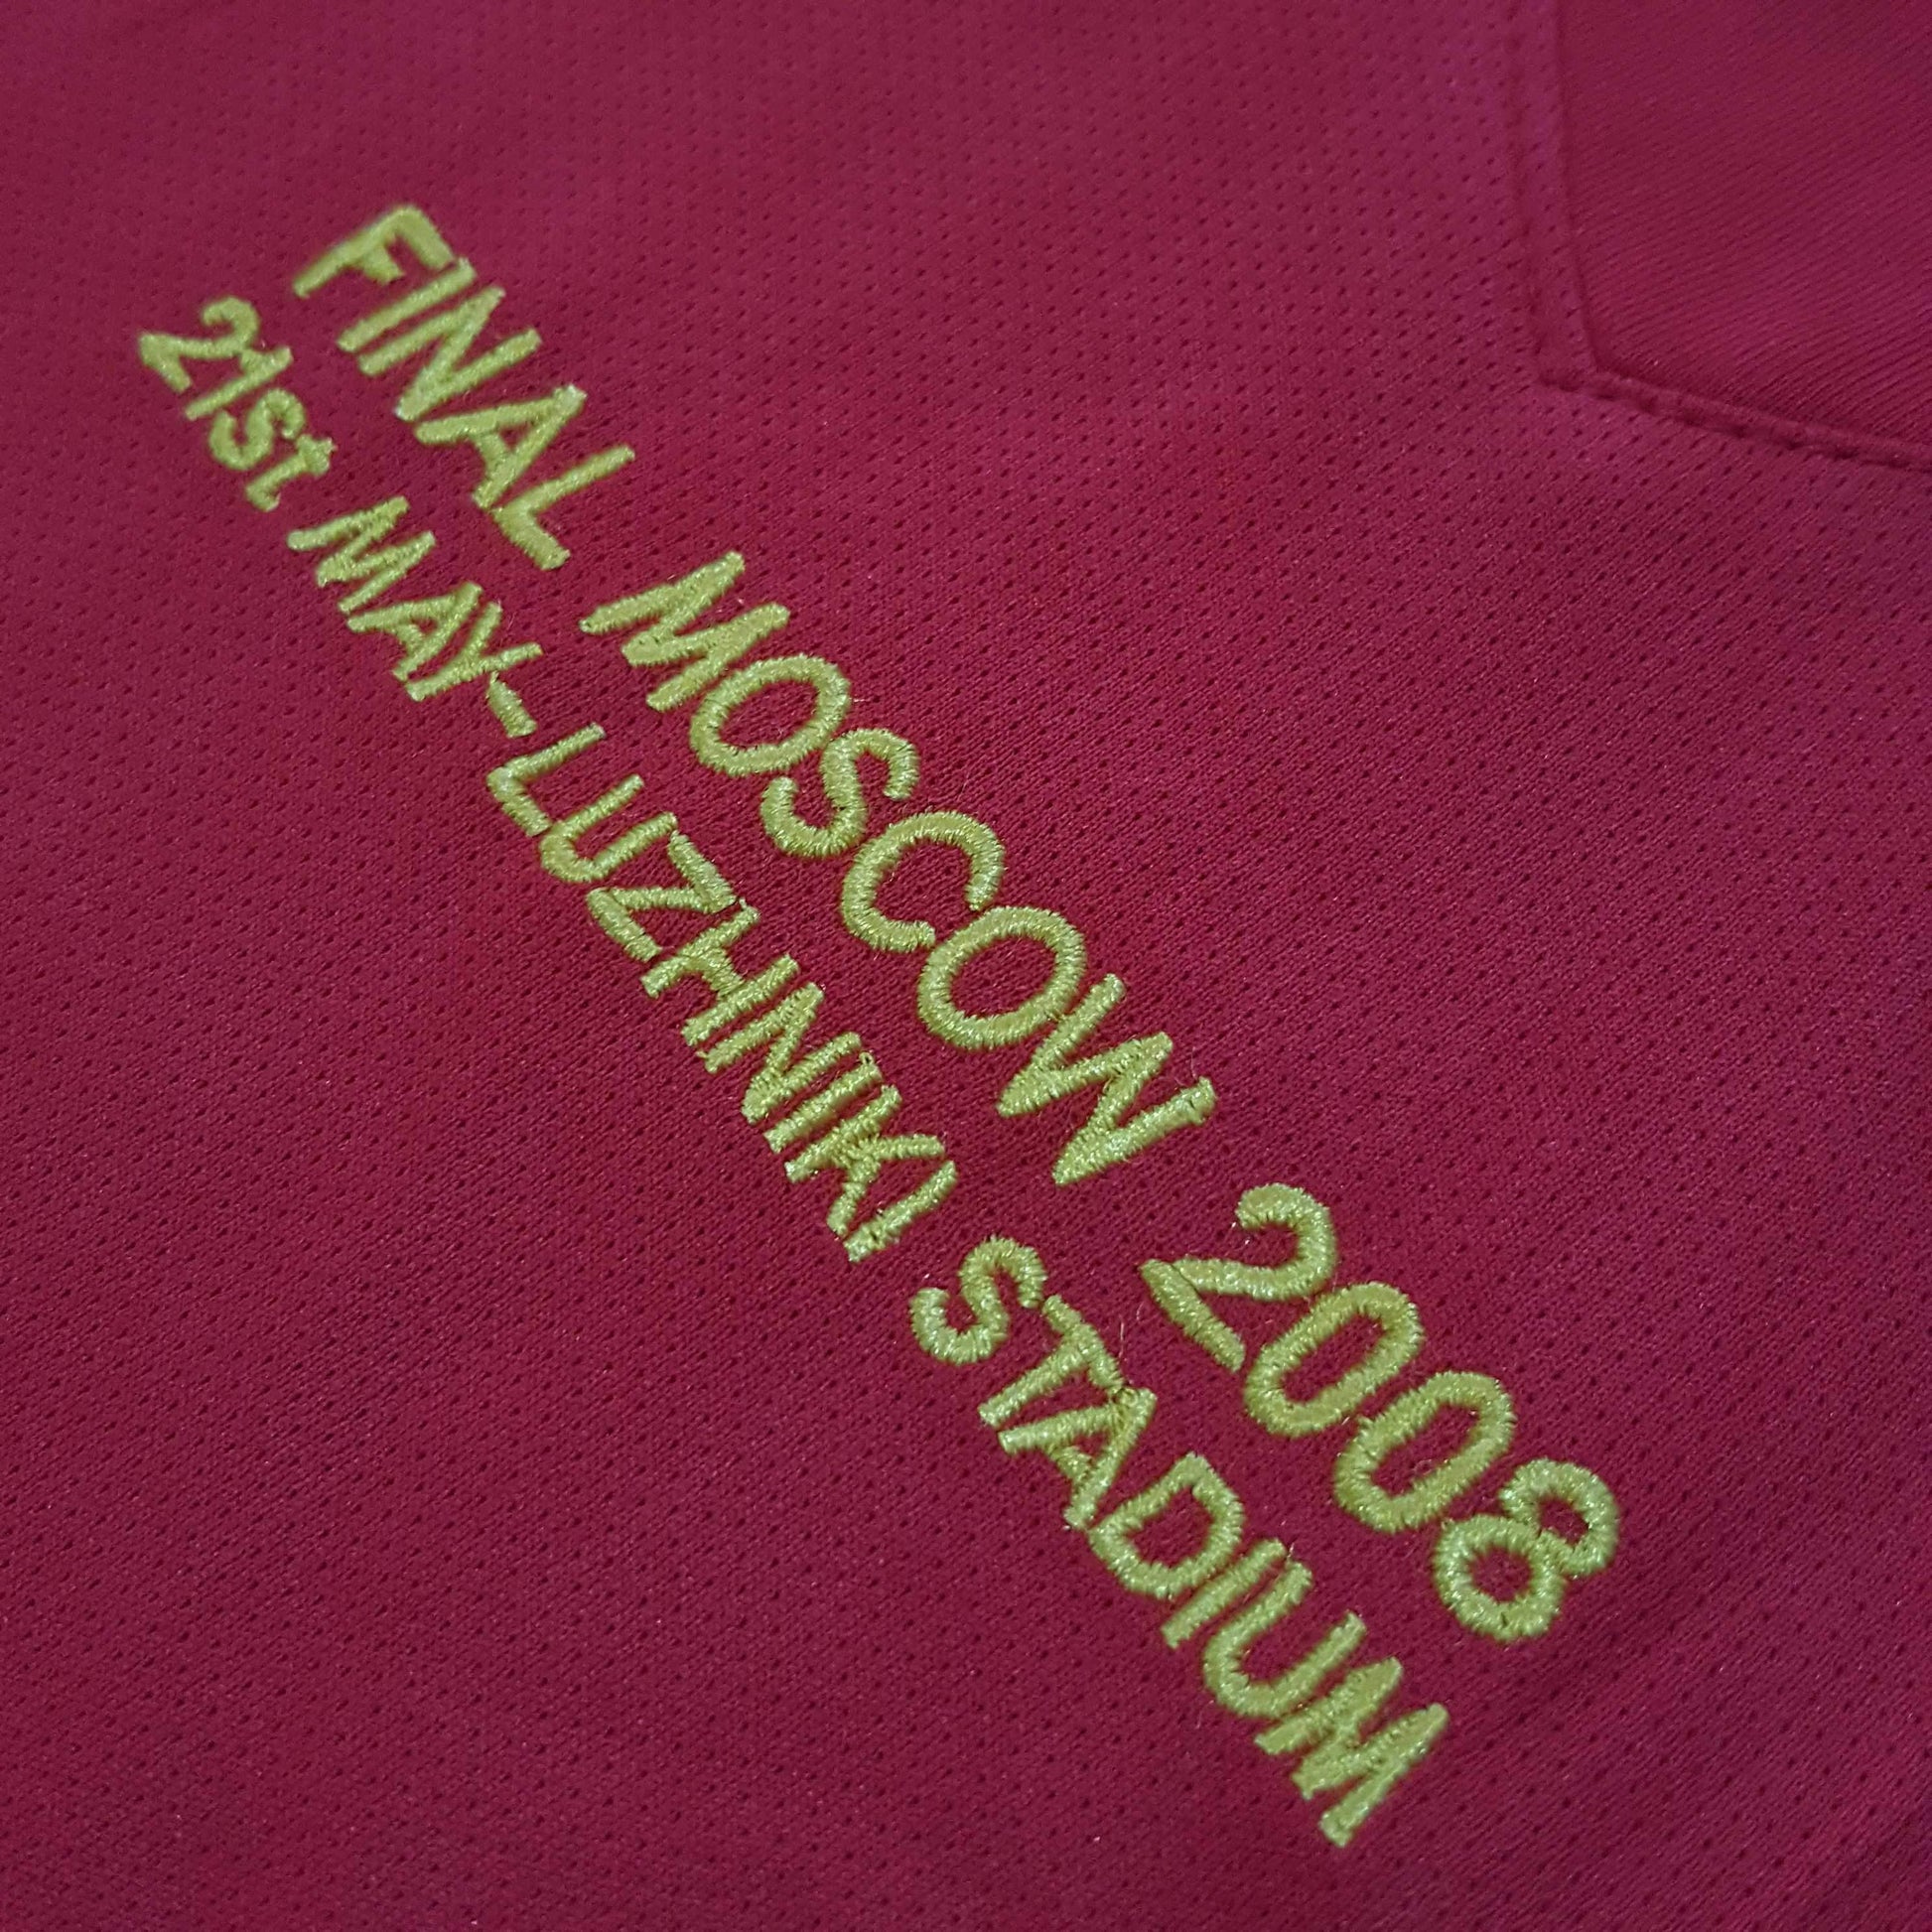 2007/08 Manchester United Final Moscow Shirt Longsleeve - ClassicFootballJersey